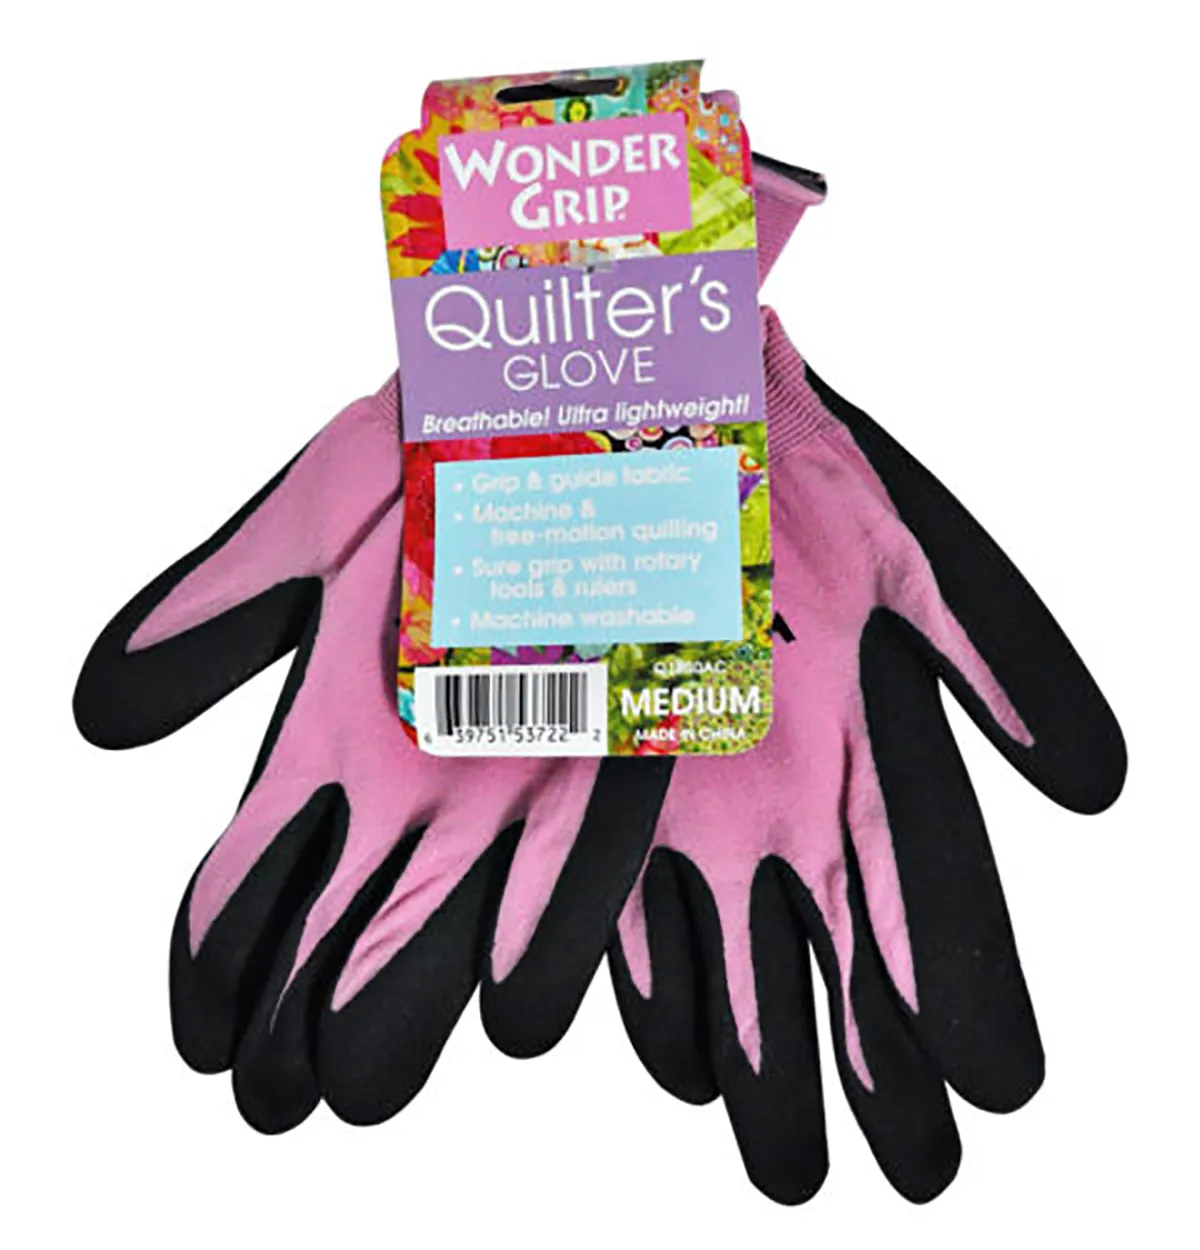 Wondergrips quilting gloves